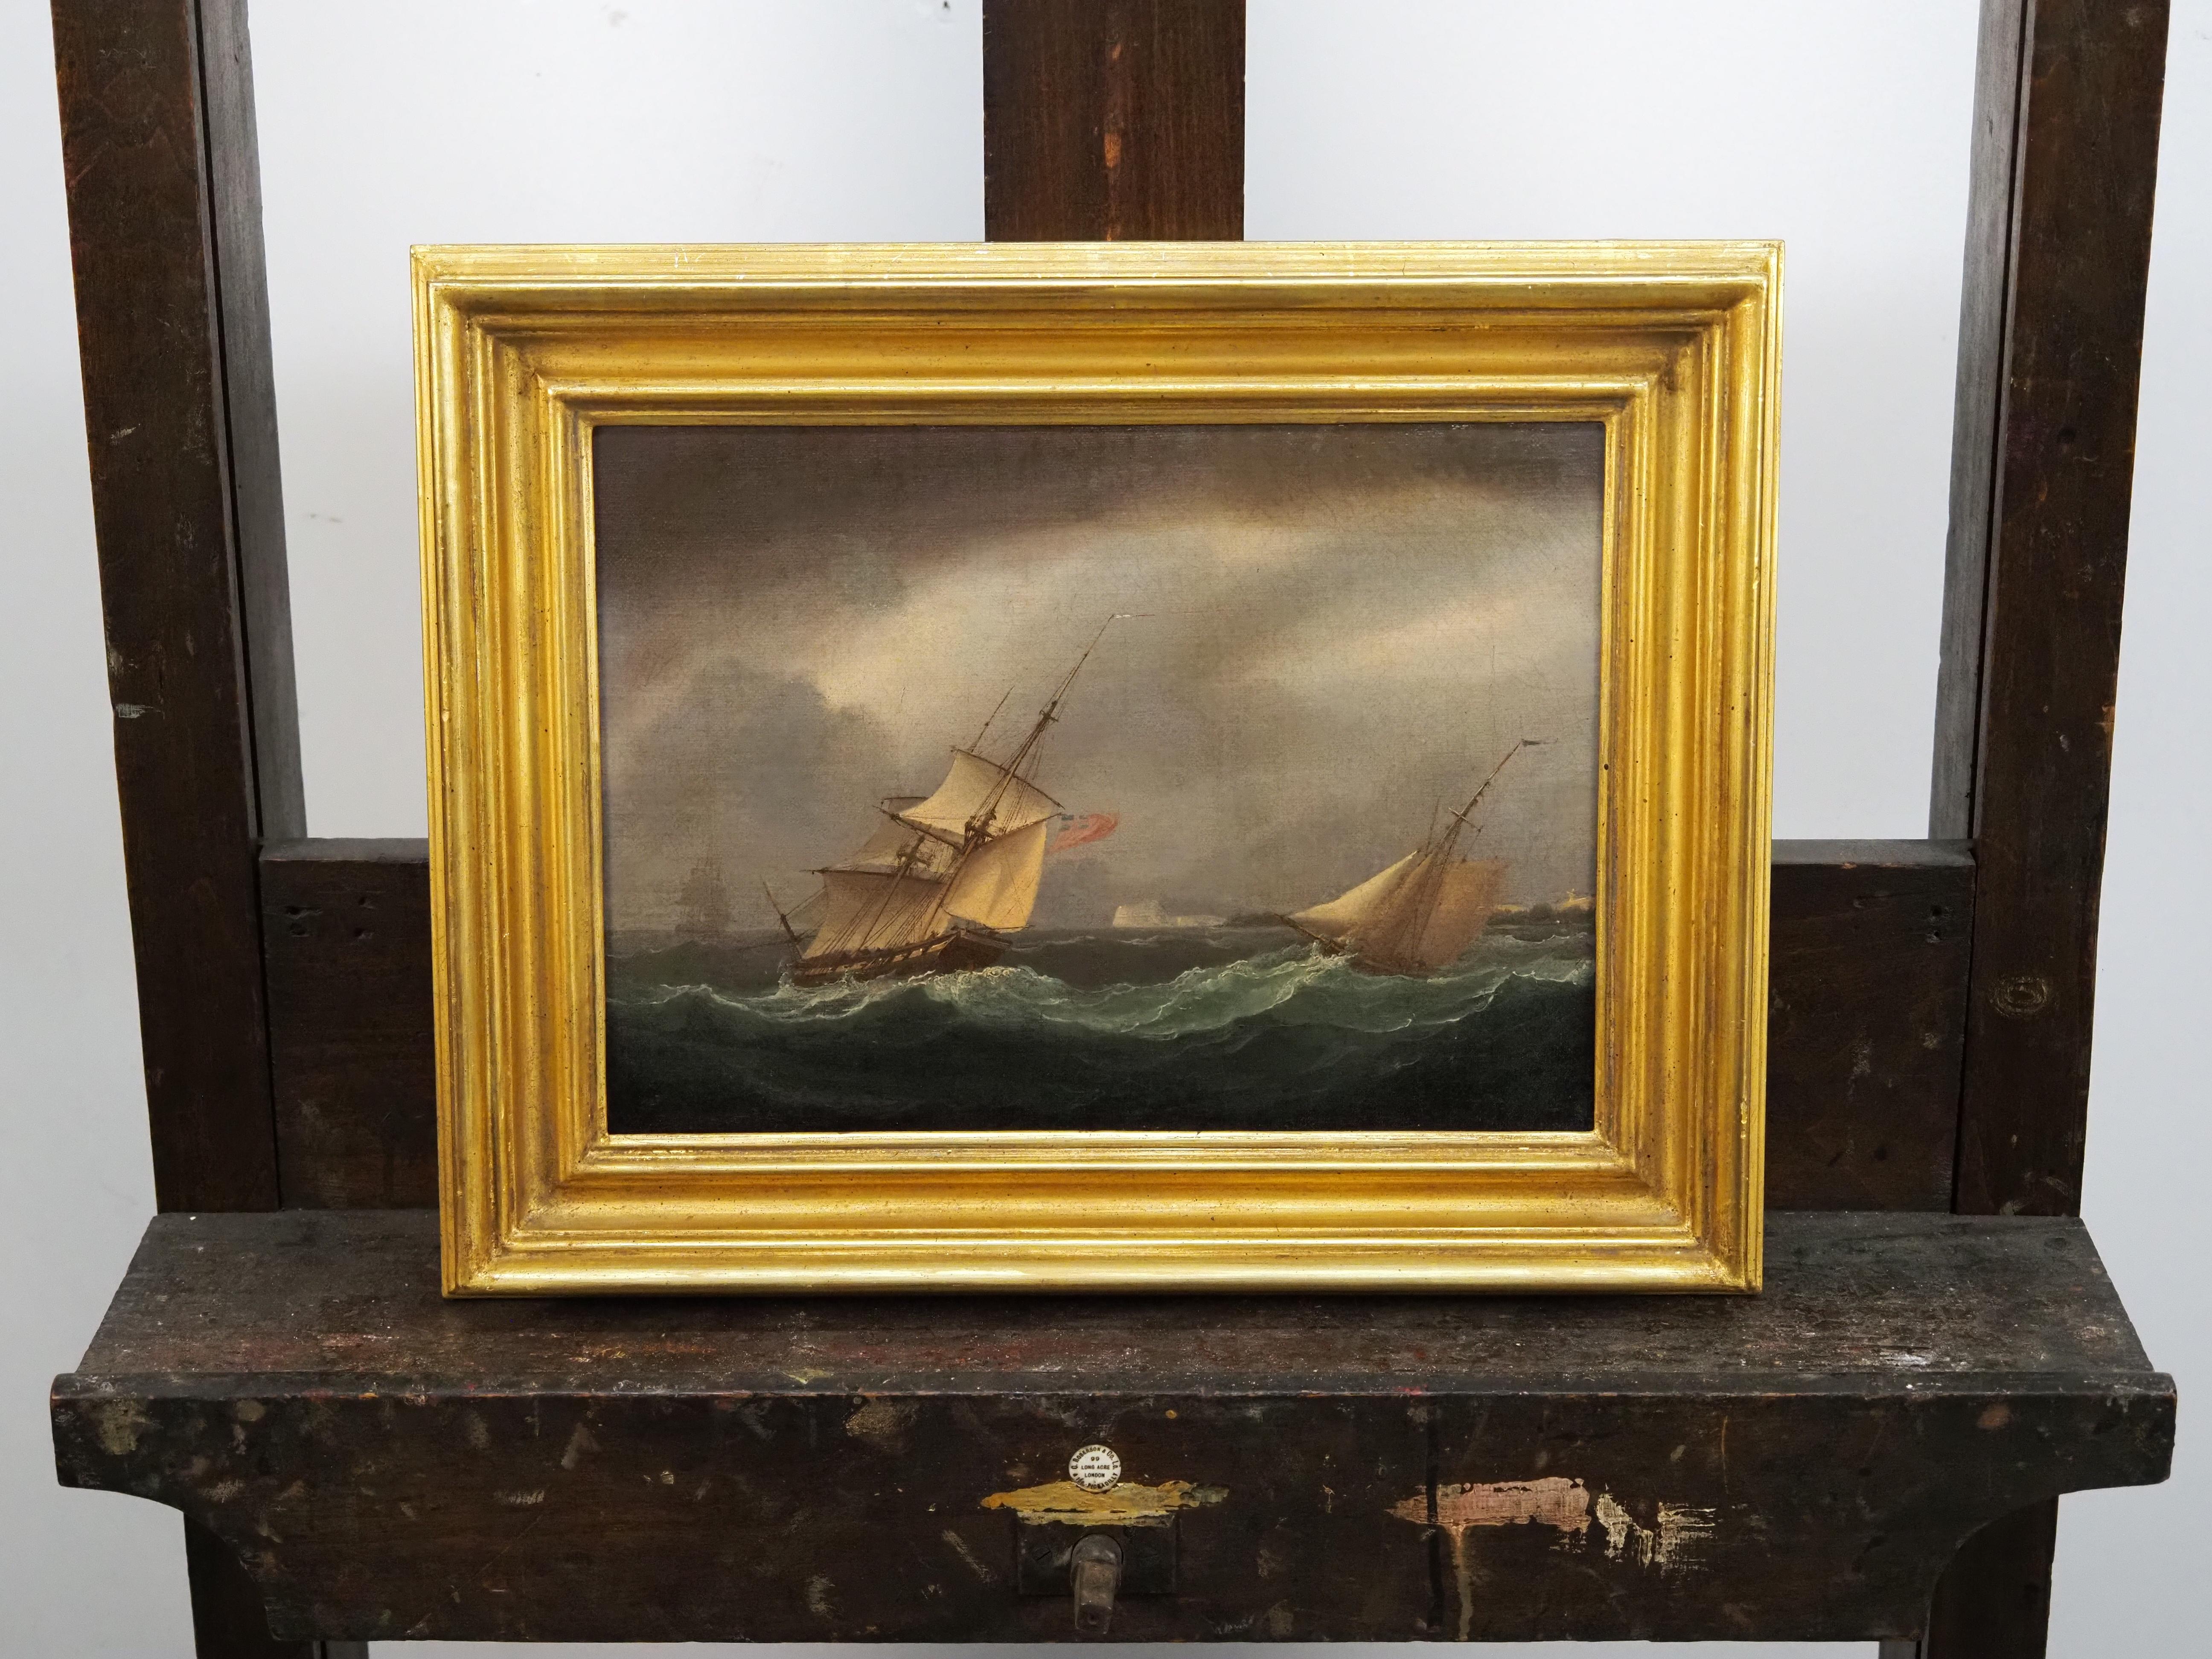 Thomas Buttersworth (1768-1842)
Schifffahrt in kabbeligen Küstengewässern
signiert und datiert unten links
Öl auf Leinwand
Leinwand Größe - 9 x 12 1/2 in
Gerahmt Größe - 13 x 16 1/2

Tauchen Sie ein in die lebendige maritime Kunst von Thomas